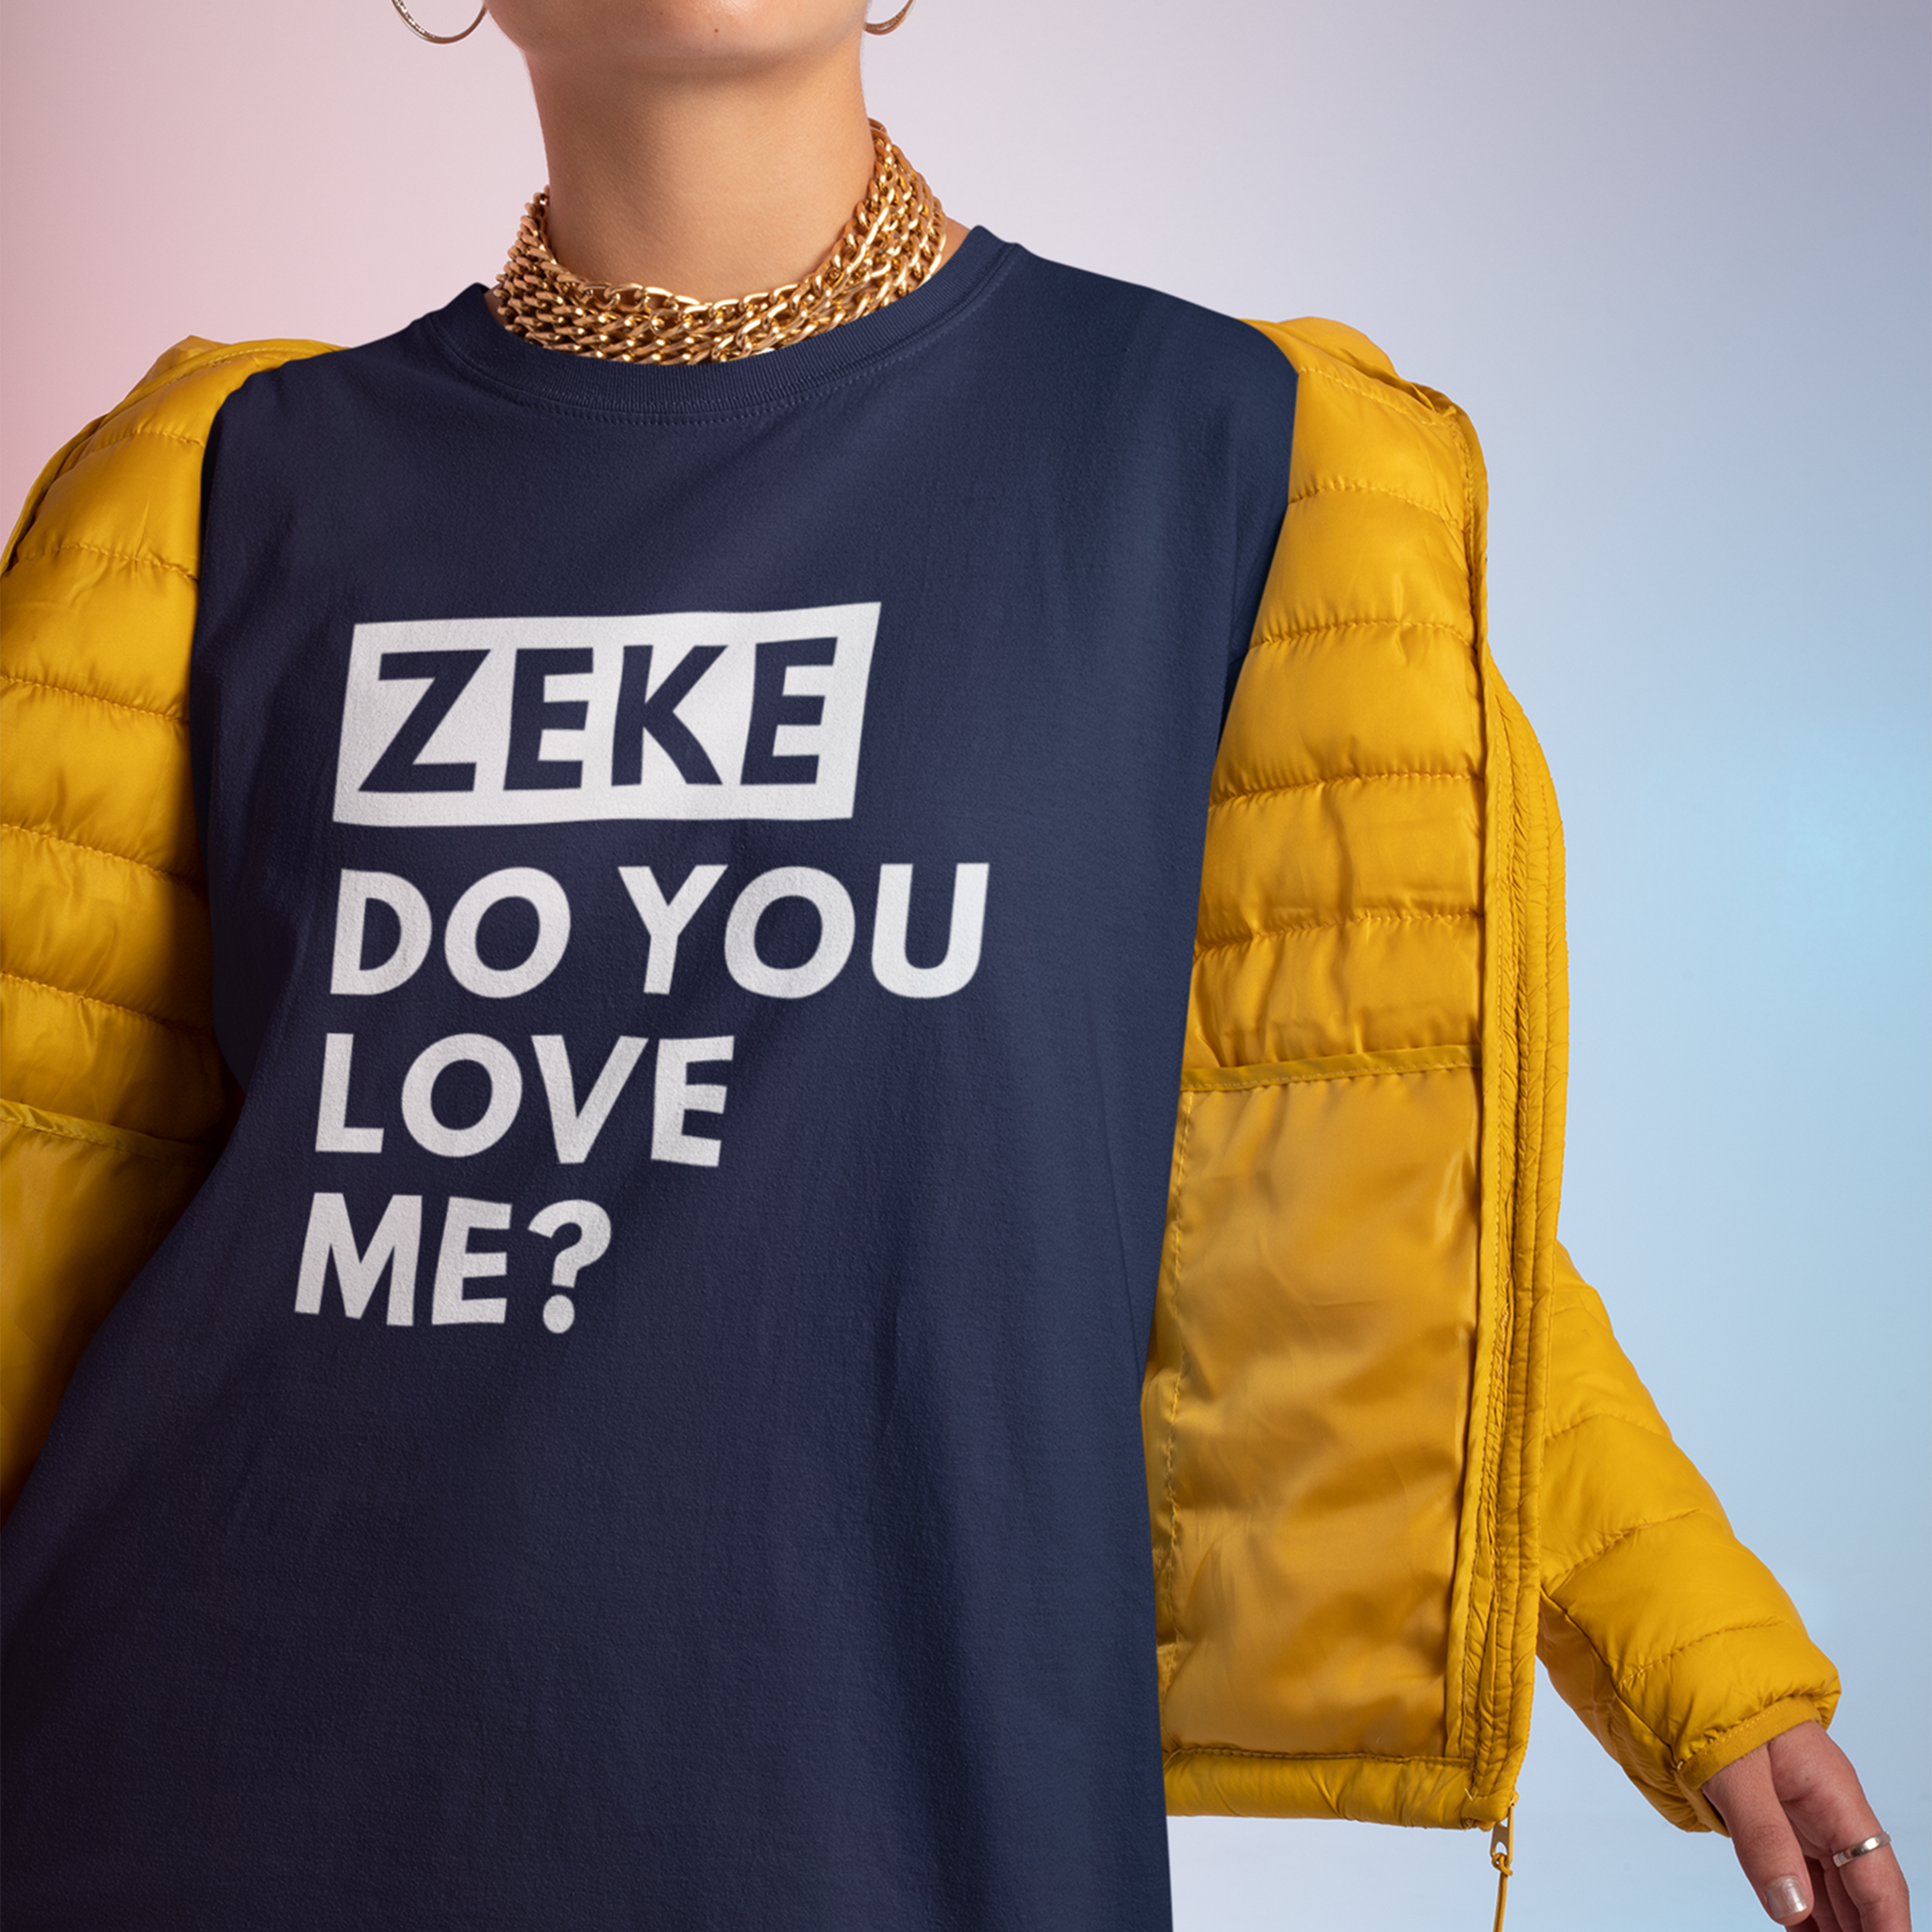 zeke-do-you-love-me-tshirt.png